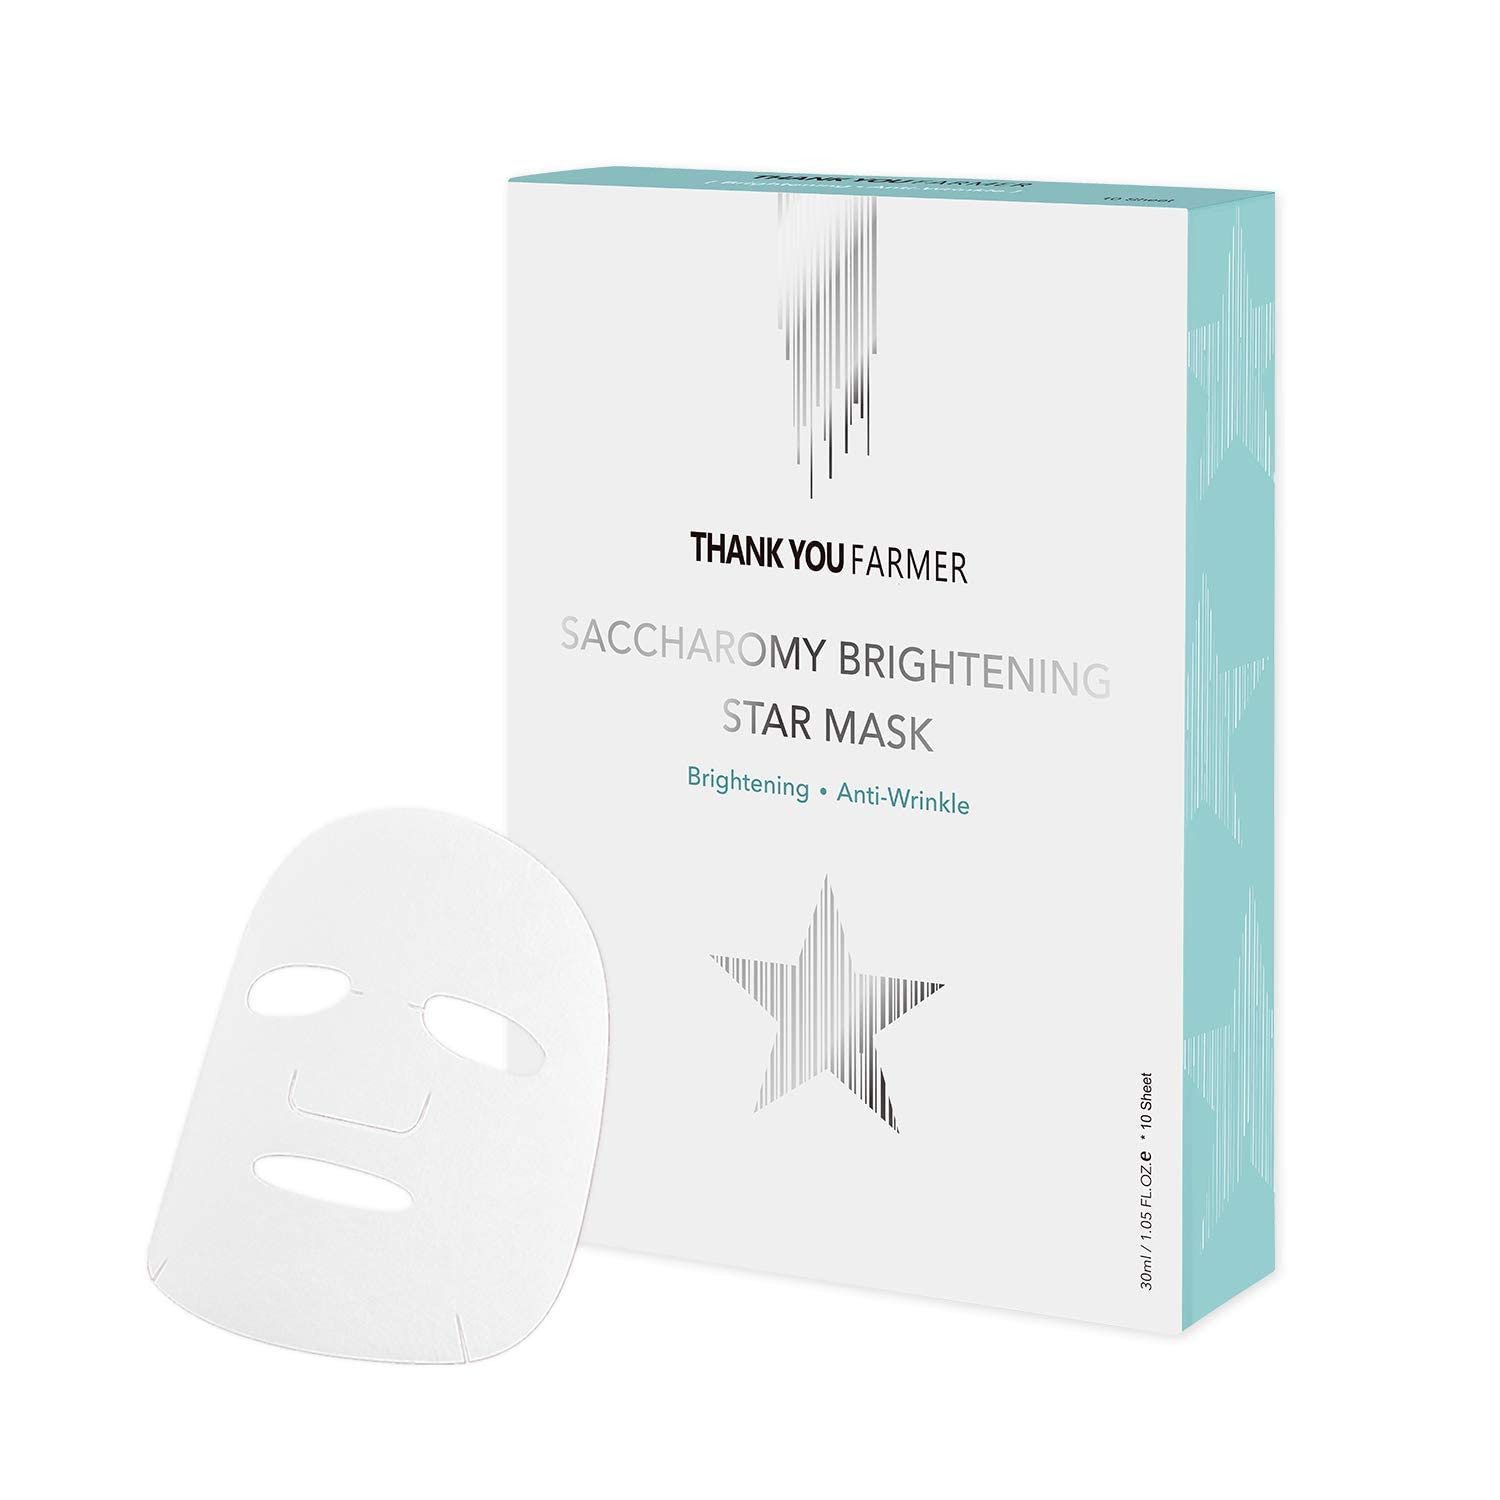 THANKYOU FARMER Saccharomy Brightening Star Masks (Box of 10 SHEETS) - Korean Face Mask Skincare